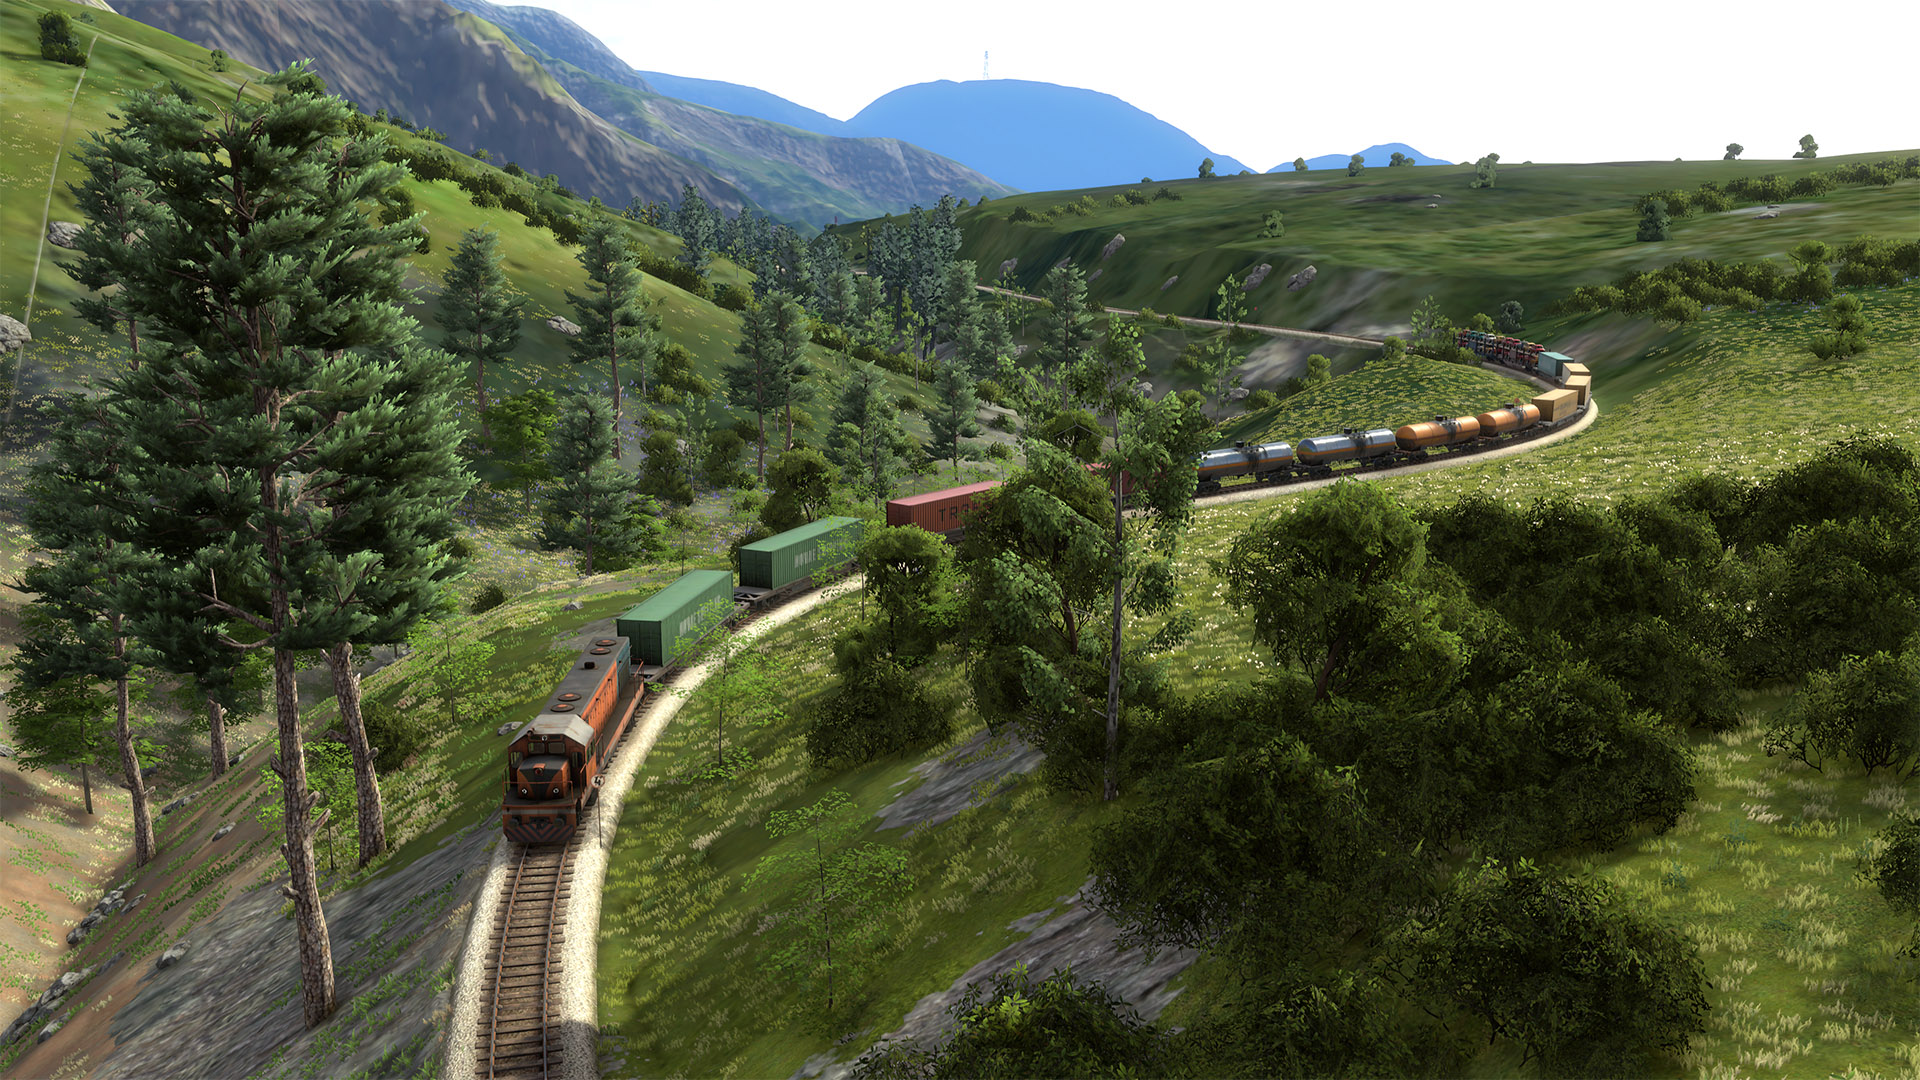 derailvalley-train-diesel-nature-4k.jpg